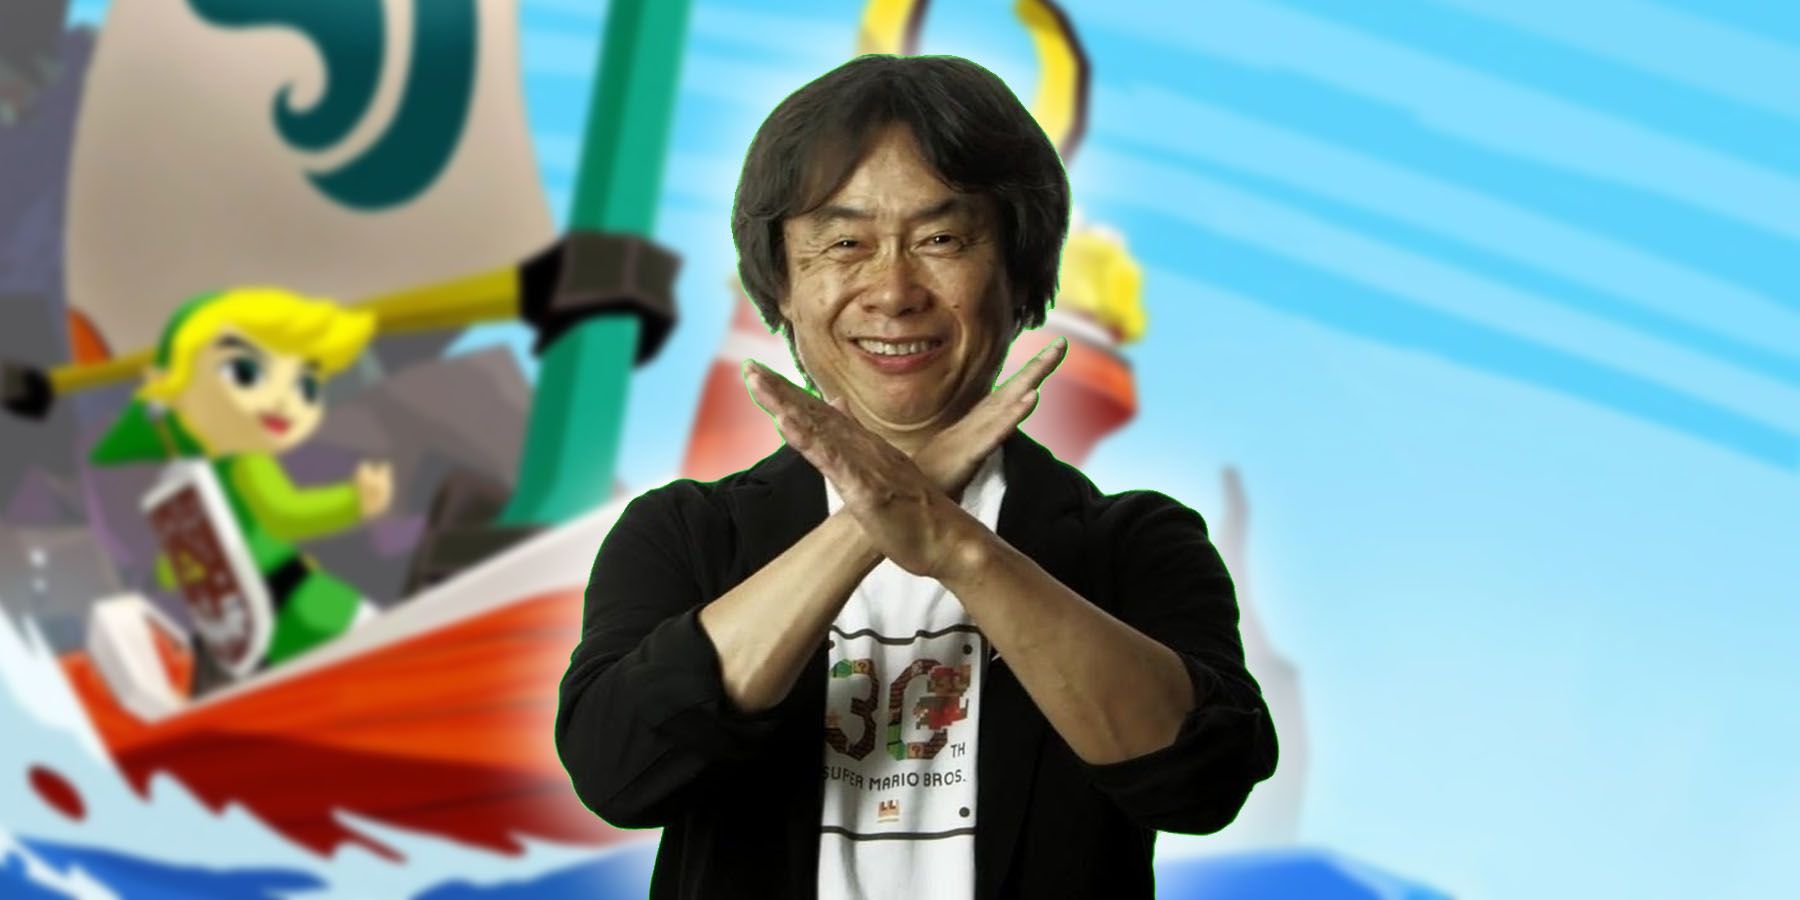 Shigeru Miyamoto literally cringed when first shown 'Wind Waker